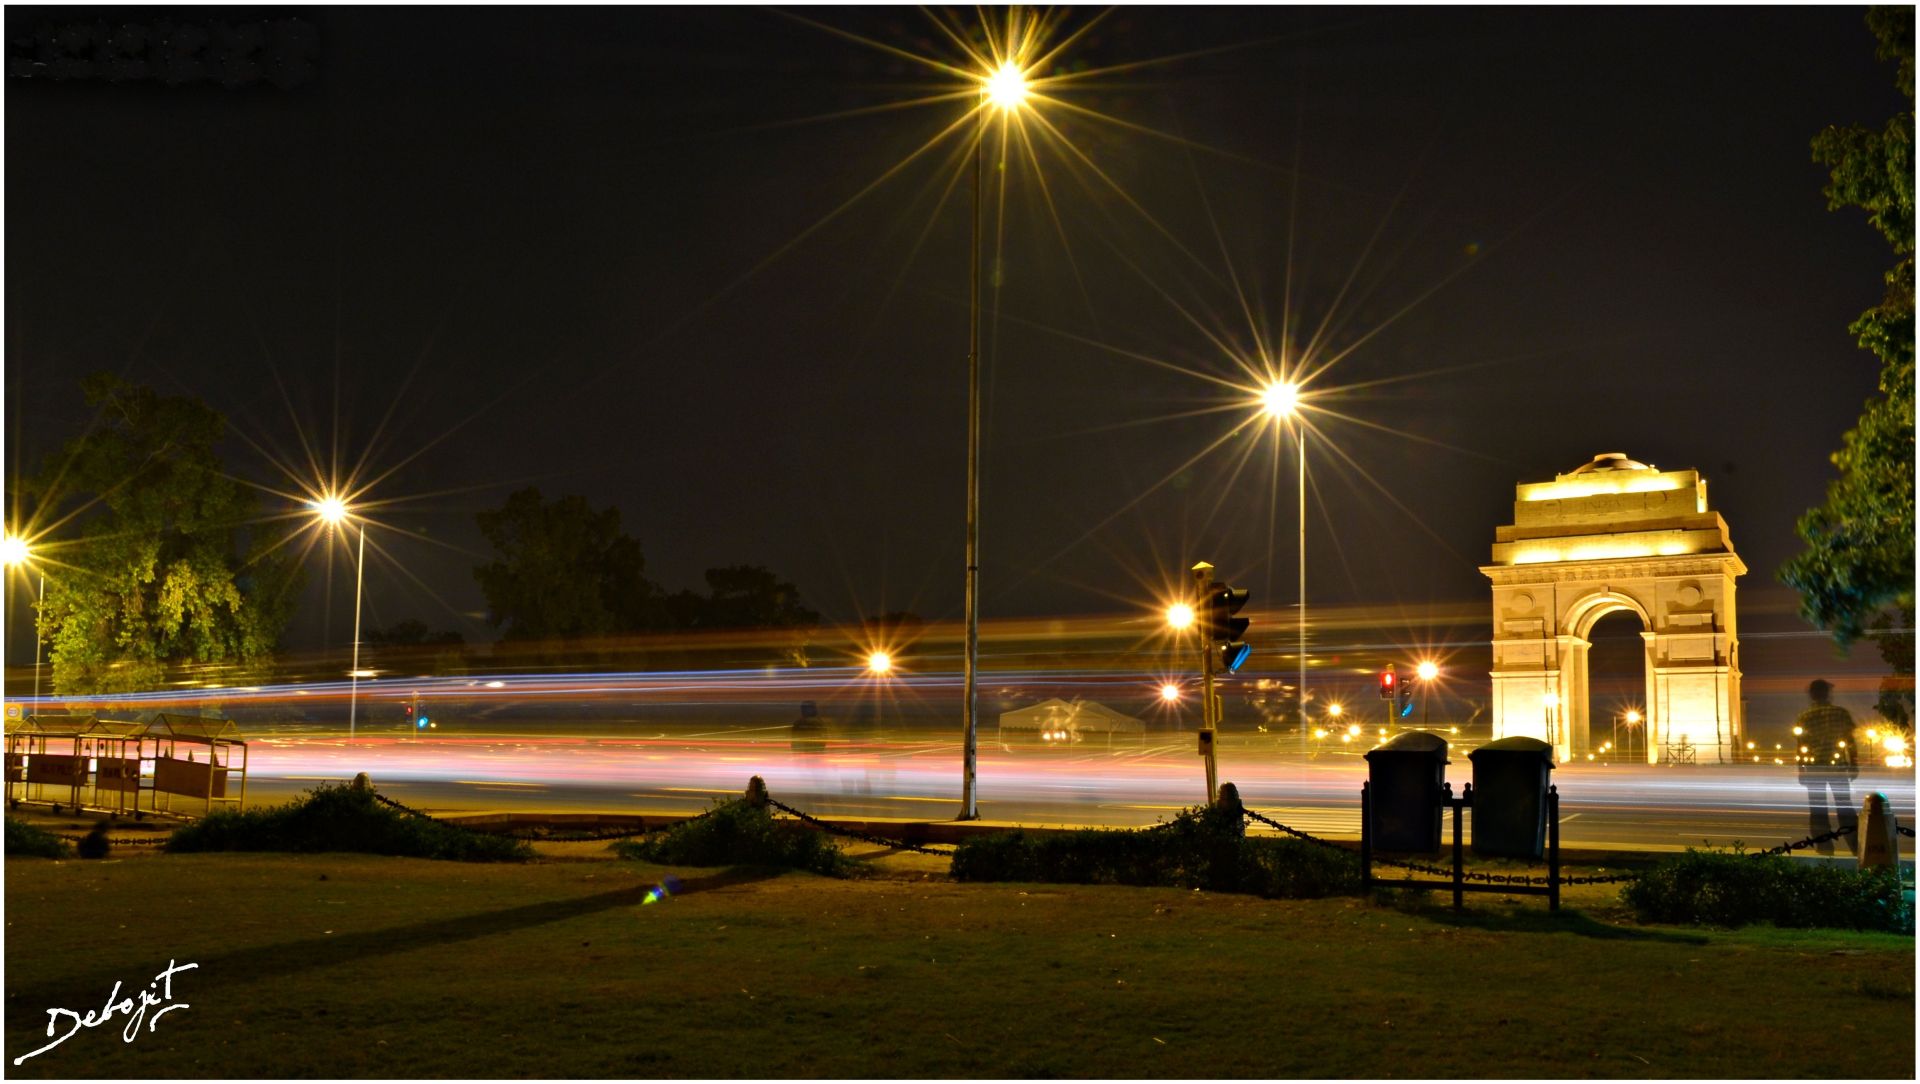 델리 공항 배경 화면,밤,가로등,하늘,빛,조명